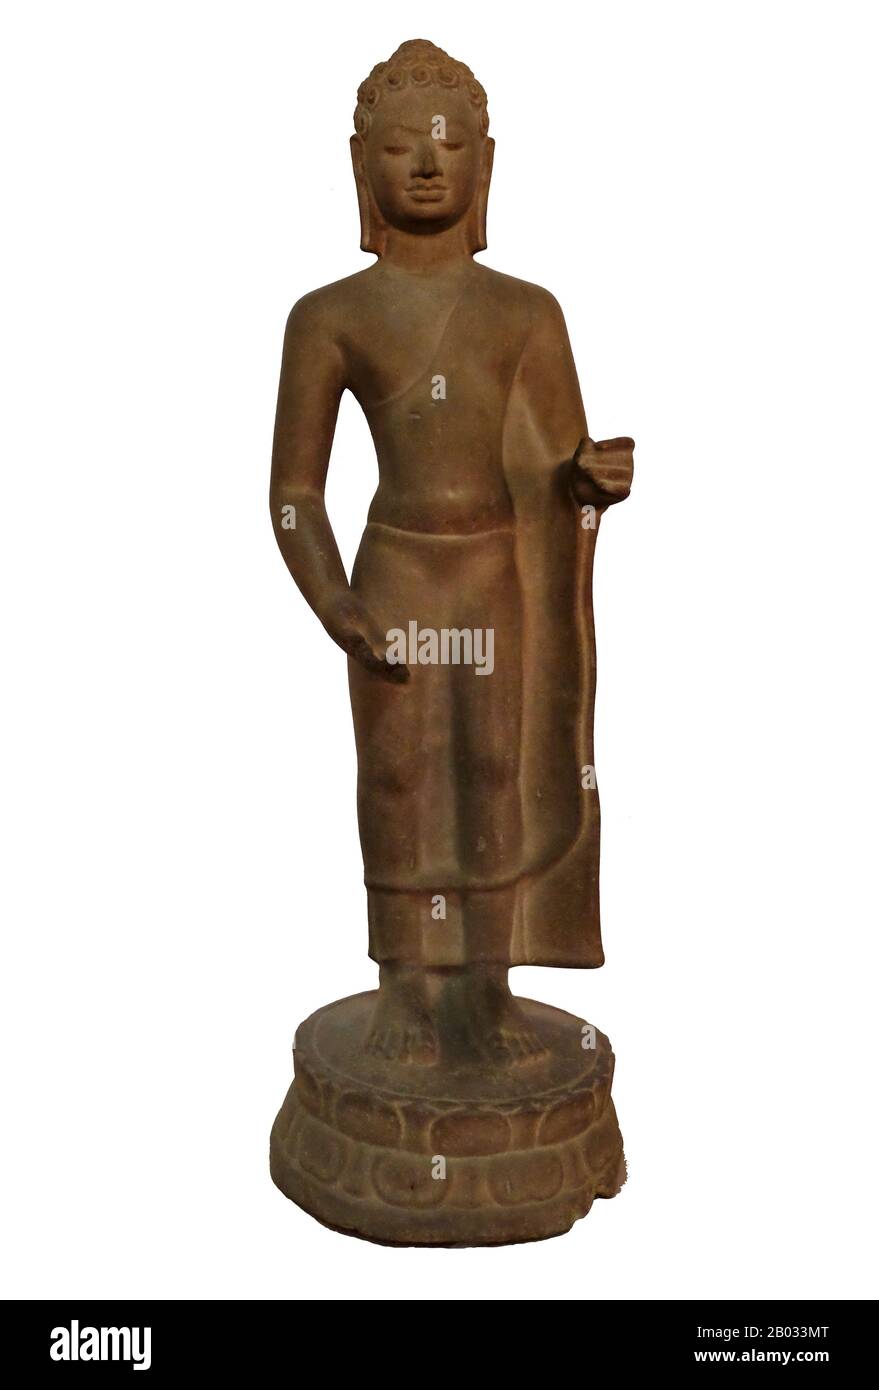 Das Nationalmuseum, das in einem 1918 erbauten roten Pavillon untergebracht ist, beherbergt eine Sammlung von Khmer-Kunst, darunter einige der besten vorhandenen Stücke. Zu den Ausstellungsstücken gehören eine Statue aus dem 6. Jahrhundert von Vishnu, eine Statue aus dem 9. Jahrhundert von Shiva und der berühmte skulptierte Kopf von Jayavarman VII in meditativer Pose. Besonders beeindruckend ist eine beschädigte Büste eines sich zurückverwindenden Vishnu, das einst Teil einer massiven Bronzestatue war, die im westlichen Mebon-Tempel in Angkor gefunden wurde. Stockfoto